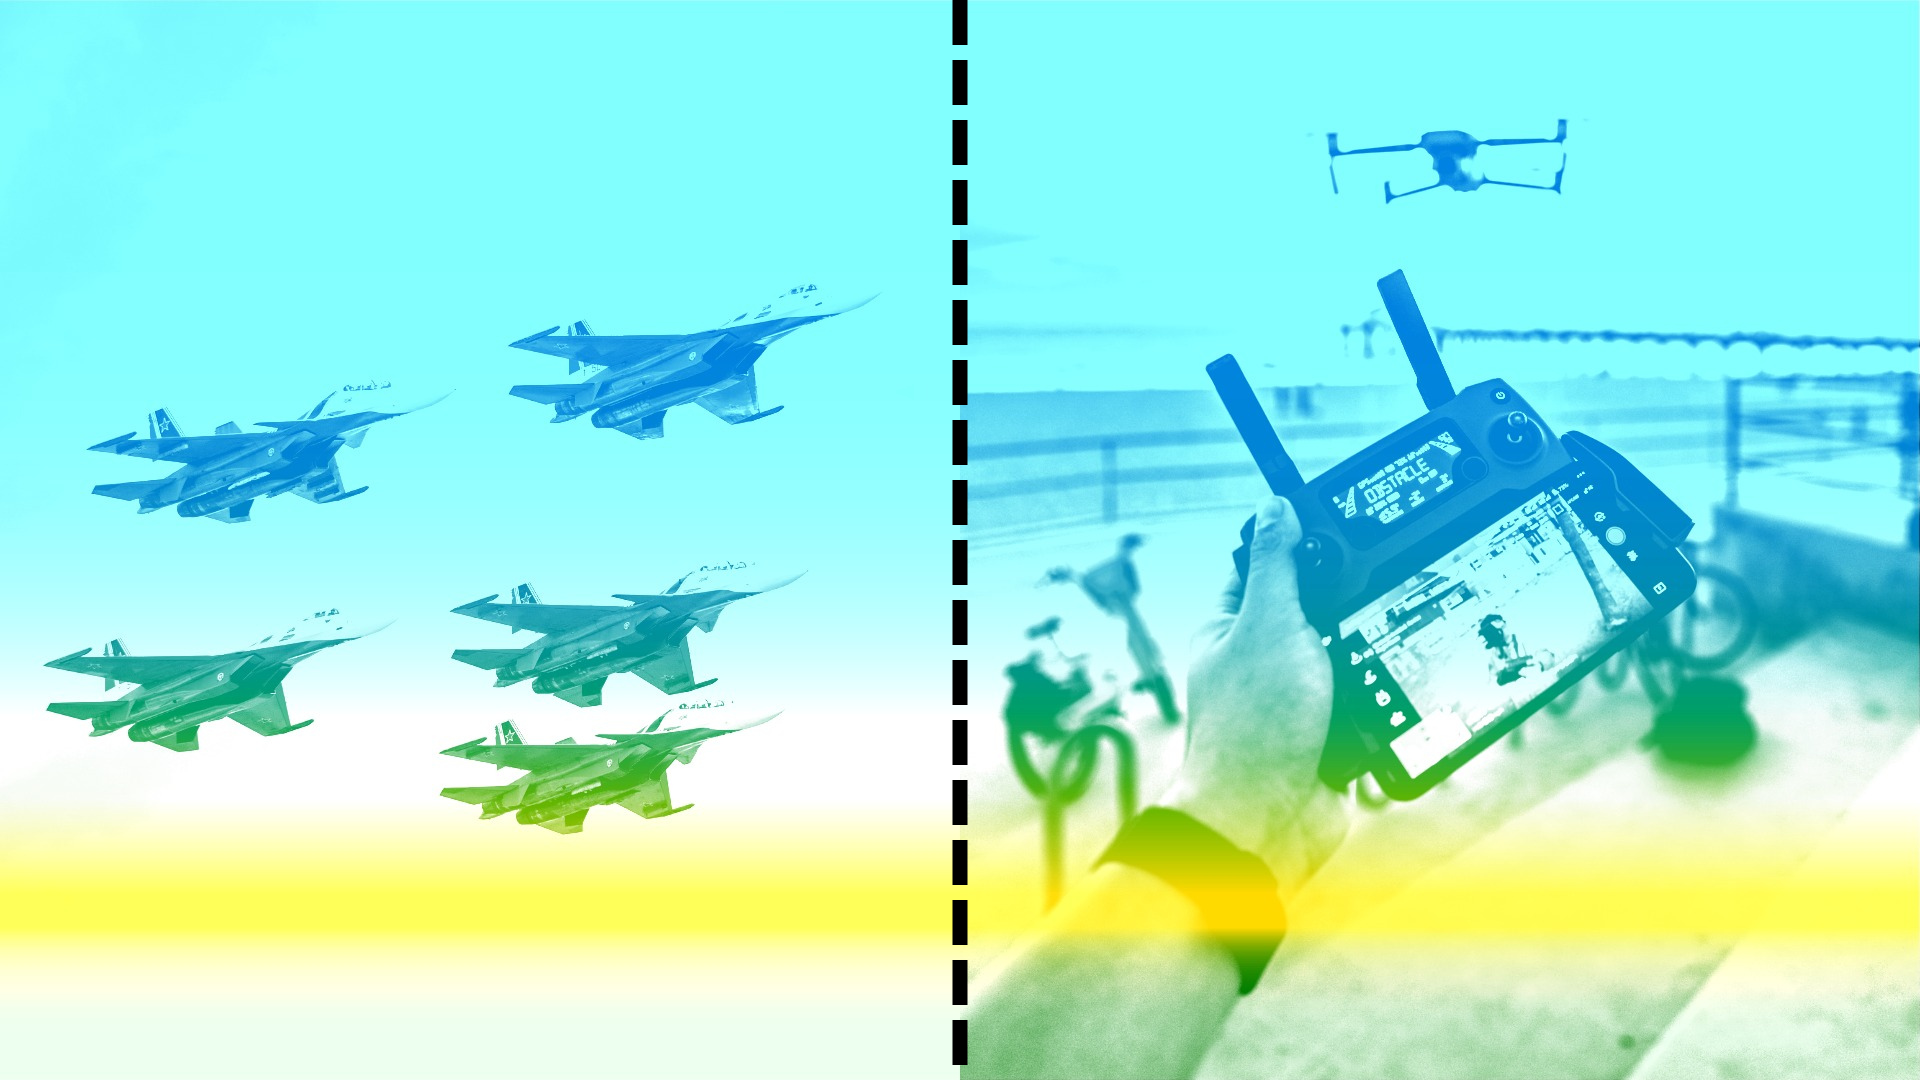 左边是军用飞机编队的图像。 右边是一个人的手控制远处看到的无人机的图像。 图像由穿孔线分隔。